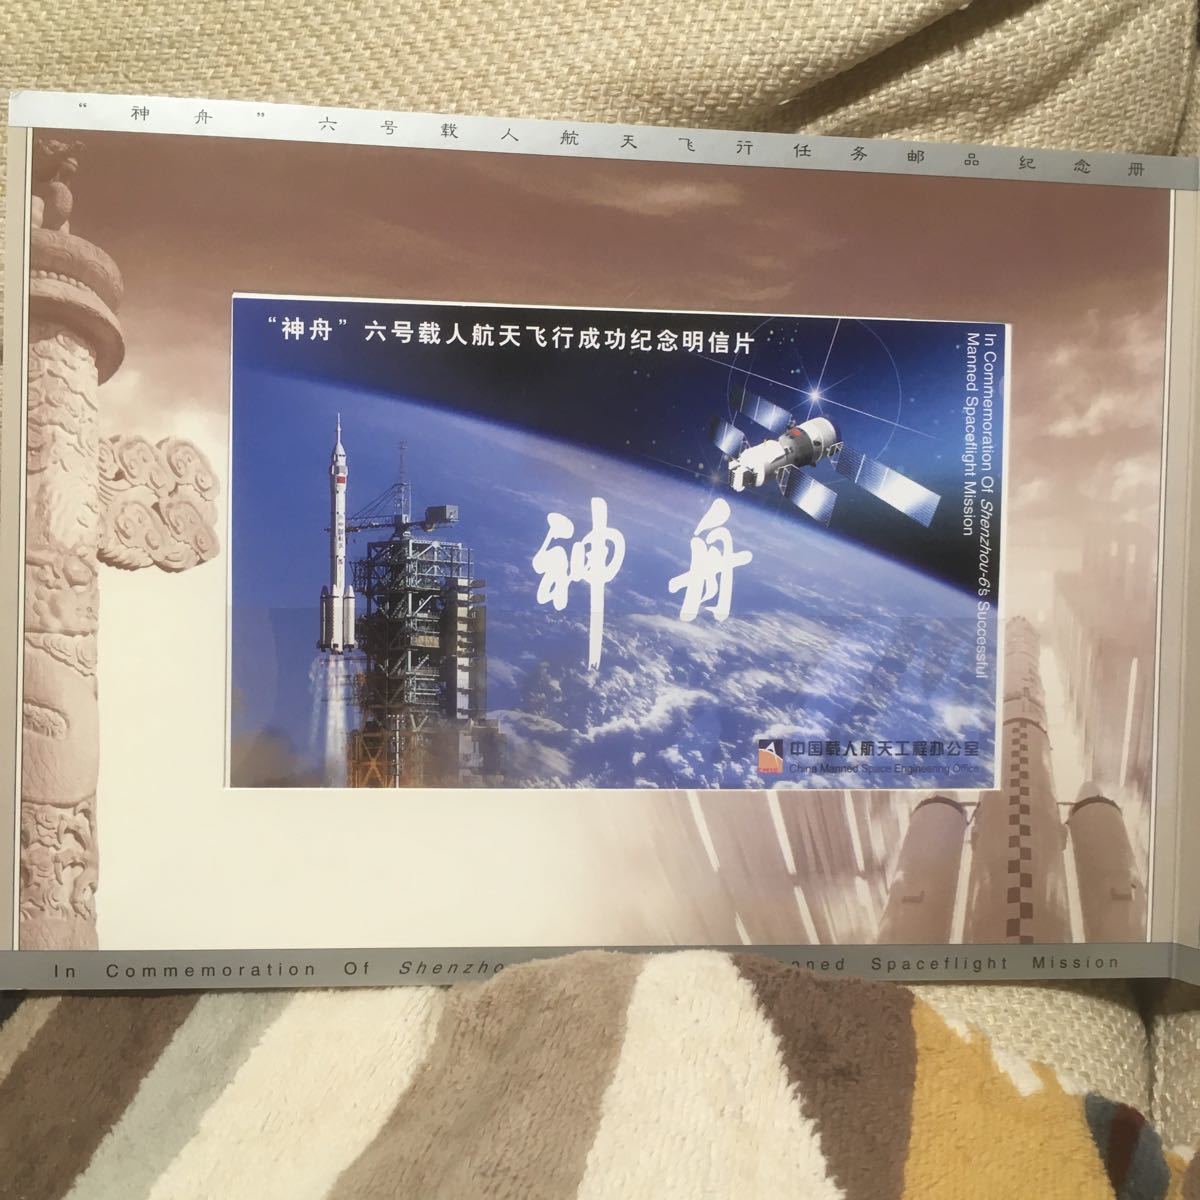 2 0 0 5「神舟6号」有人宇宙飛行ミッションのスタンプ記念アルバム